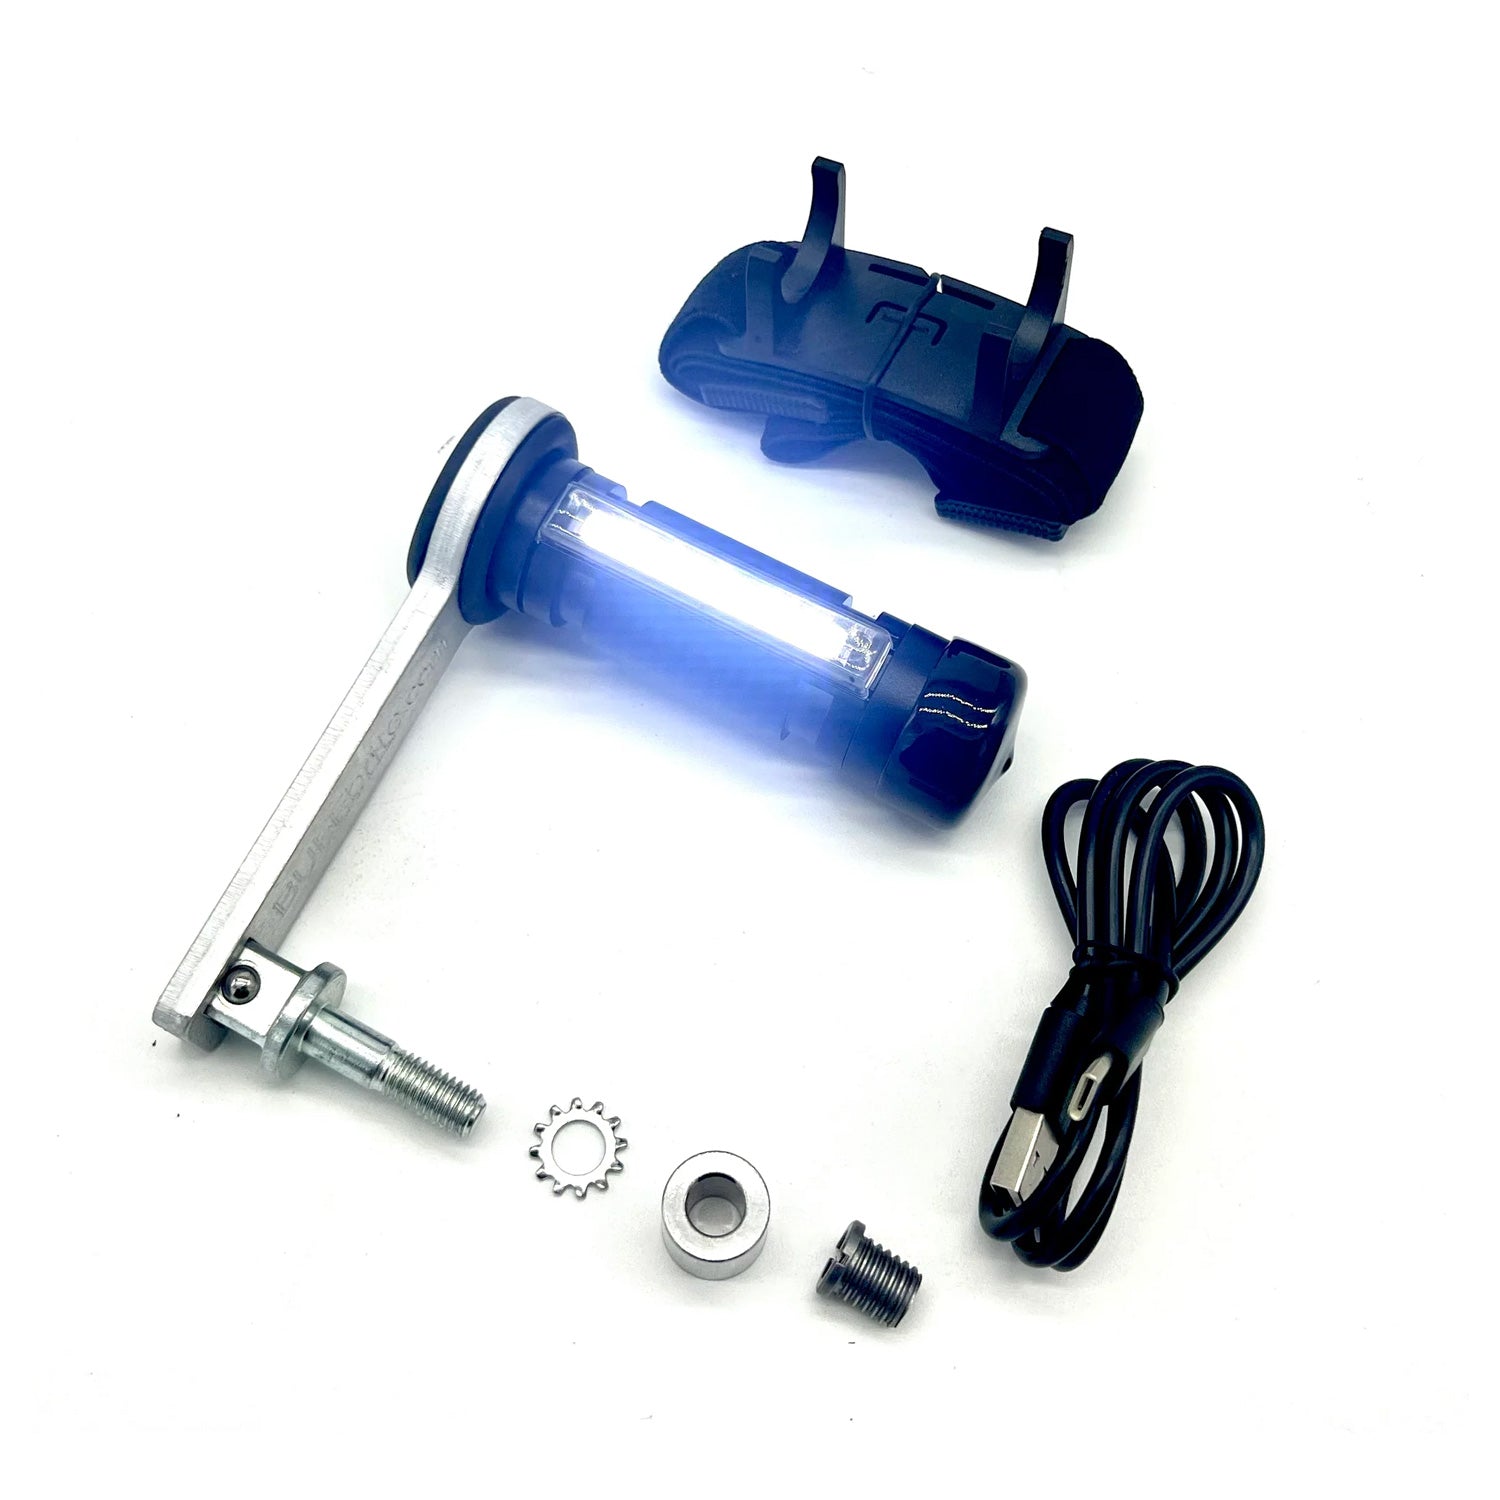 flamethrower-3-lighting-kit